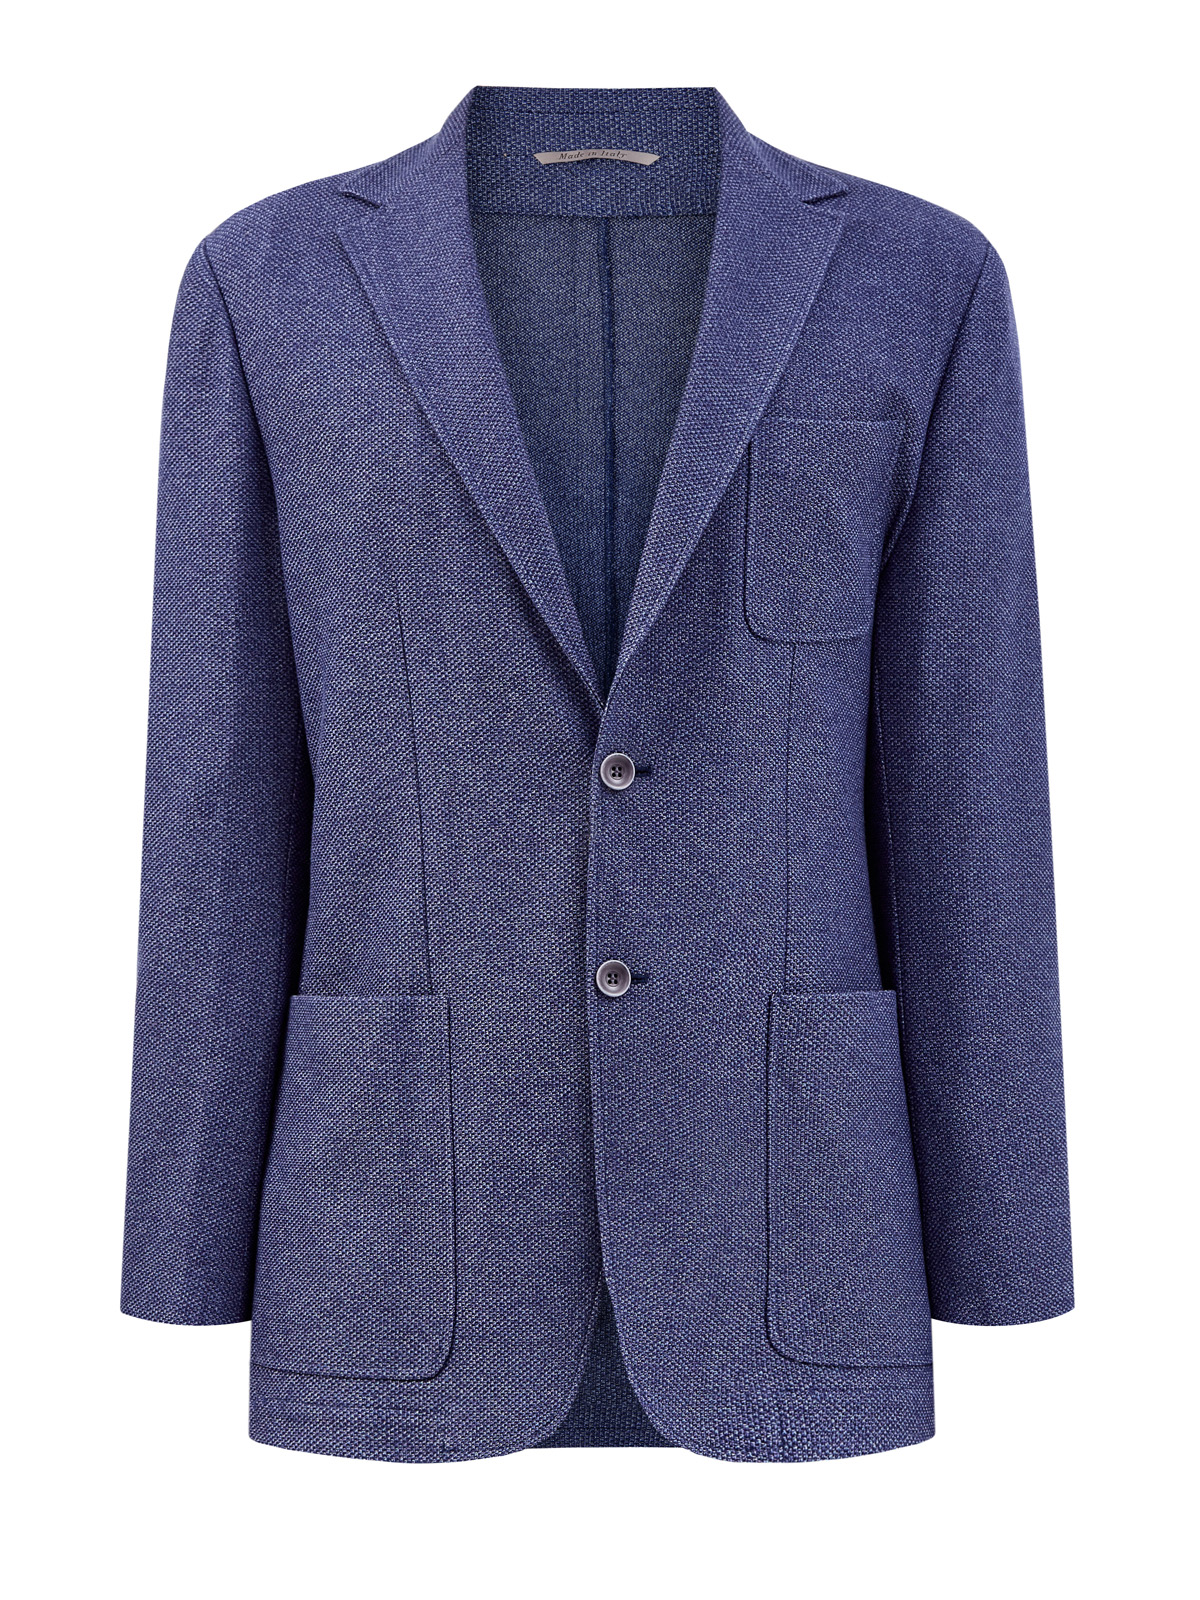 Пиджак в неаполитанском стиле из плотного хлопка CANALI синего цвета